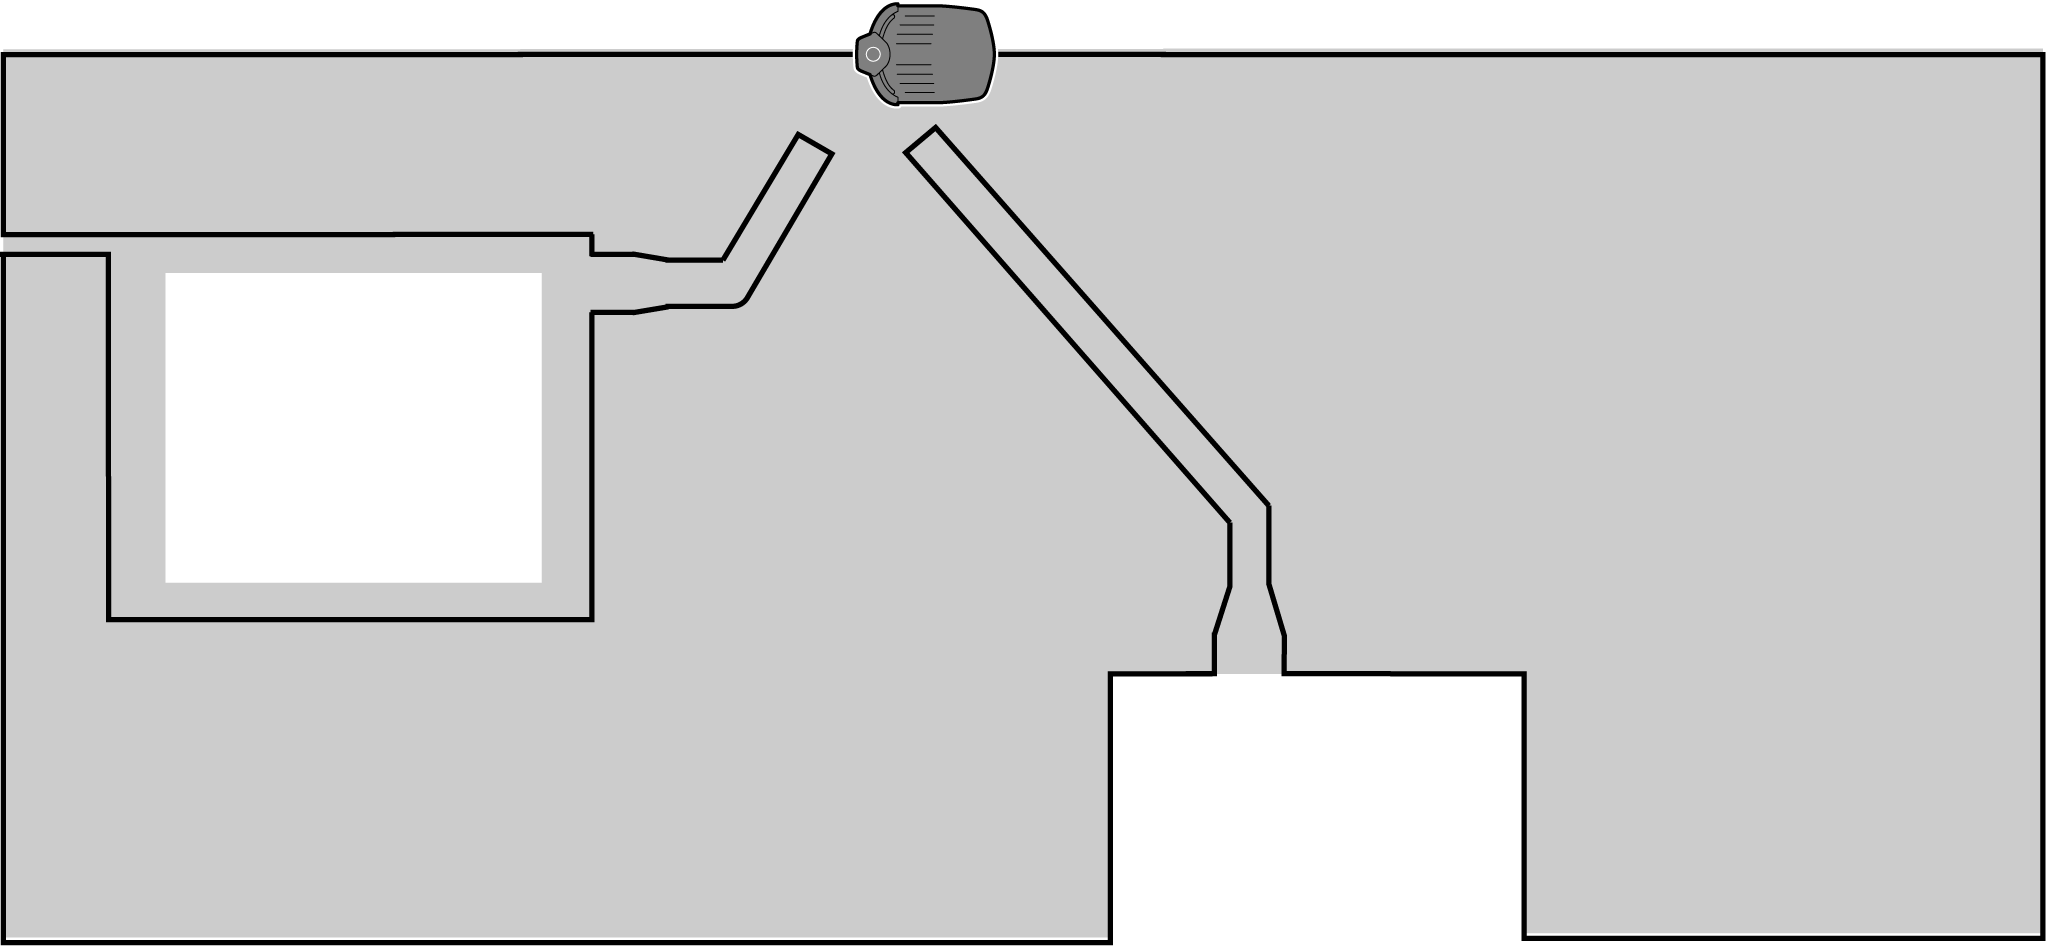 ÅTERGÅNGSKABEL: EN LINJE I 25-30 cm 30 cm 90 grader 18-20 cm Avståndet från den mittre skruven till slutet av återgångskabeln ska vara 80-85 cm Värdet för inställningen kabelöverlappning ska